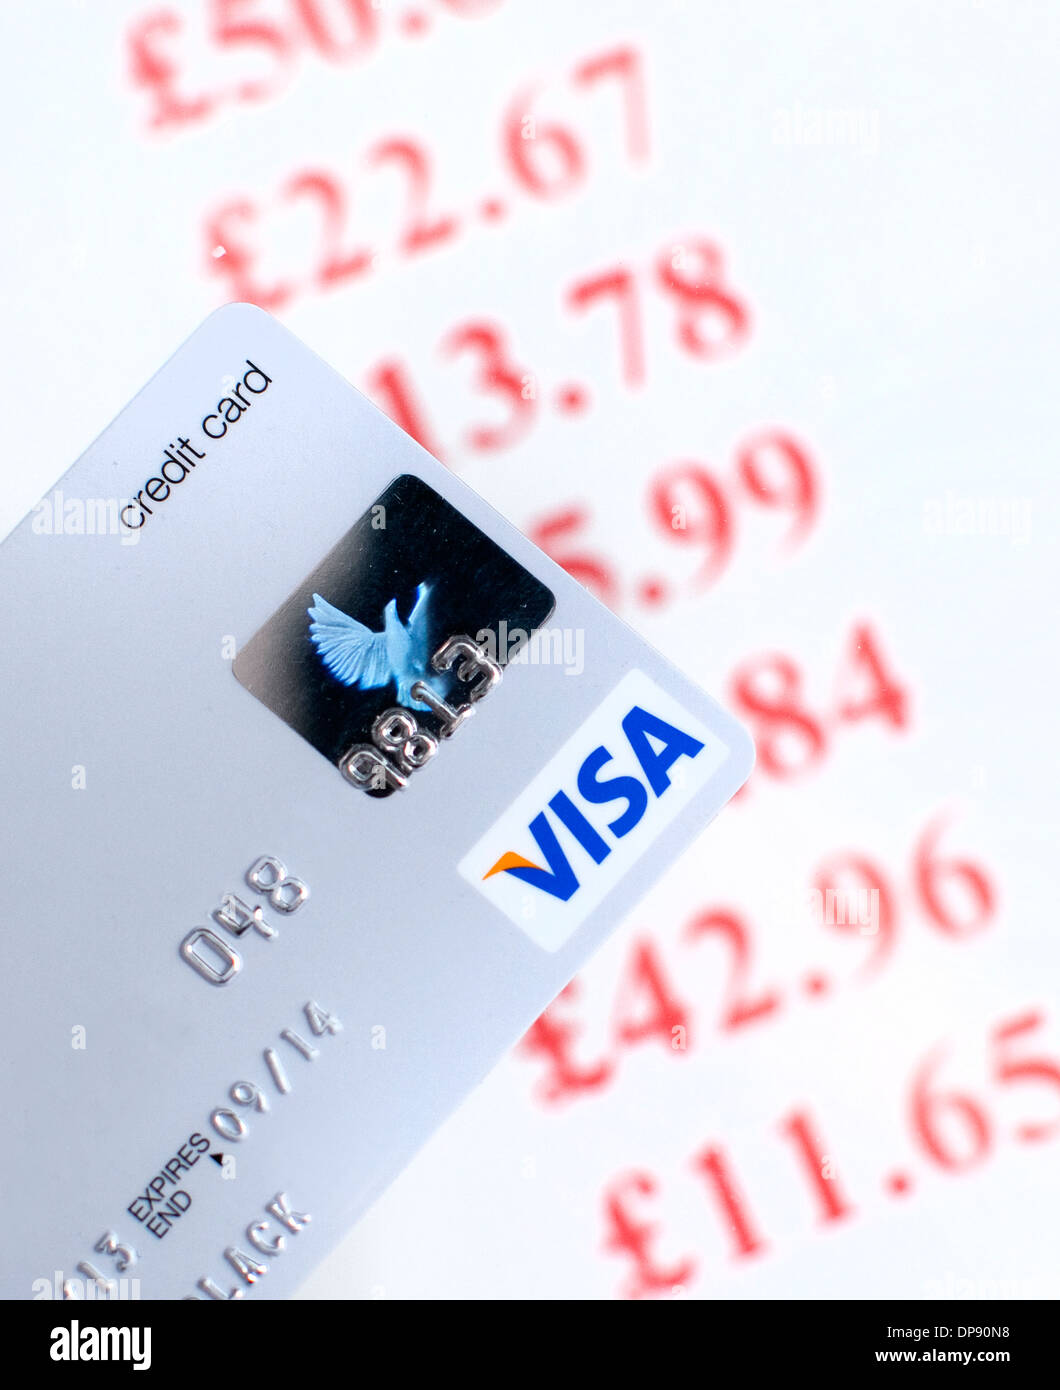 Maxed-out Visa credit card, London Stock Photo